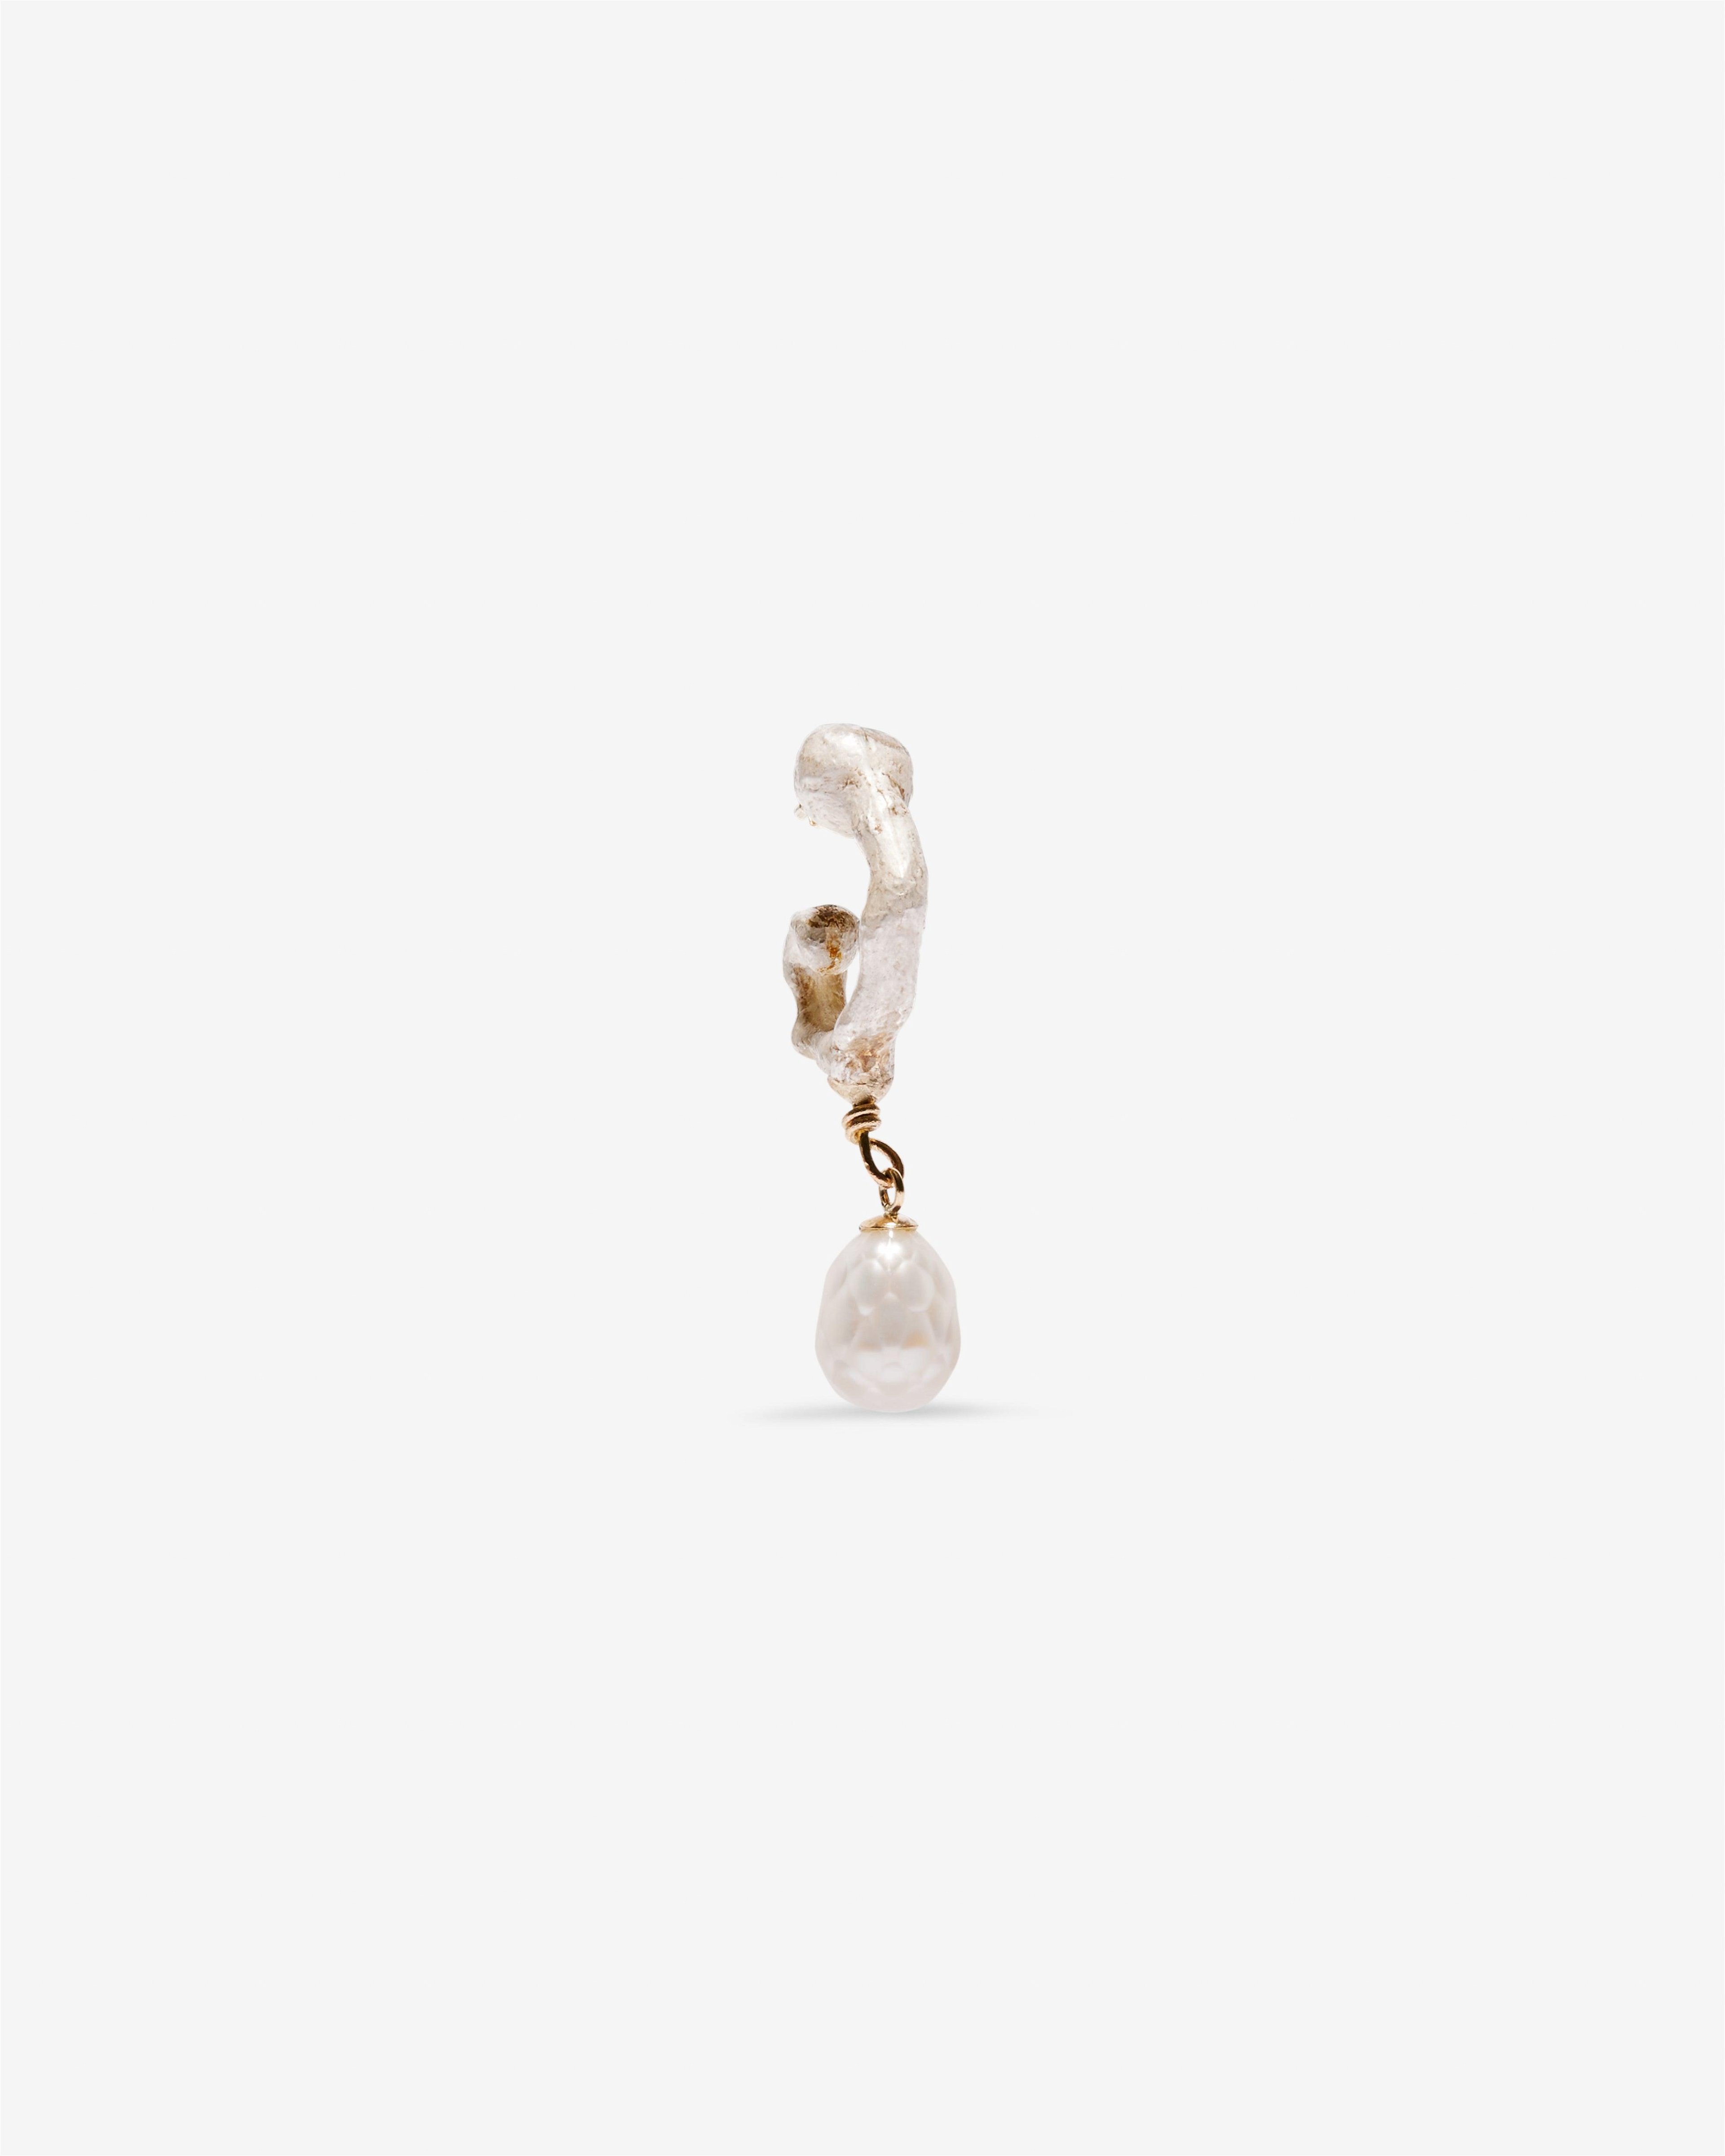 Weinan Pan - Bone Earring Dangling Pearl - (Silver/Gold) by WEINAN PAN